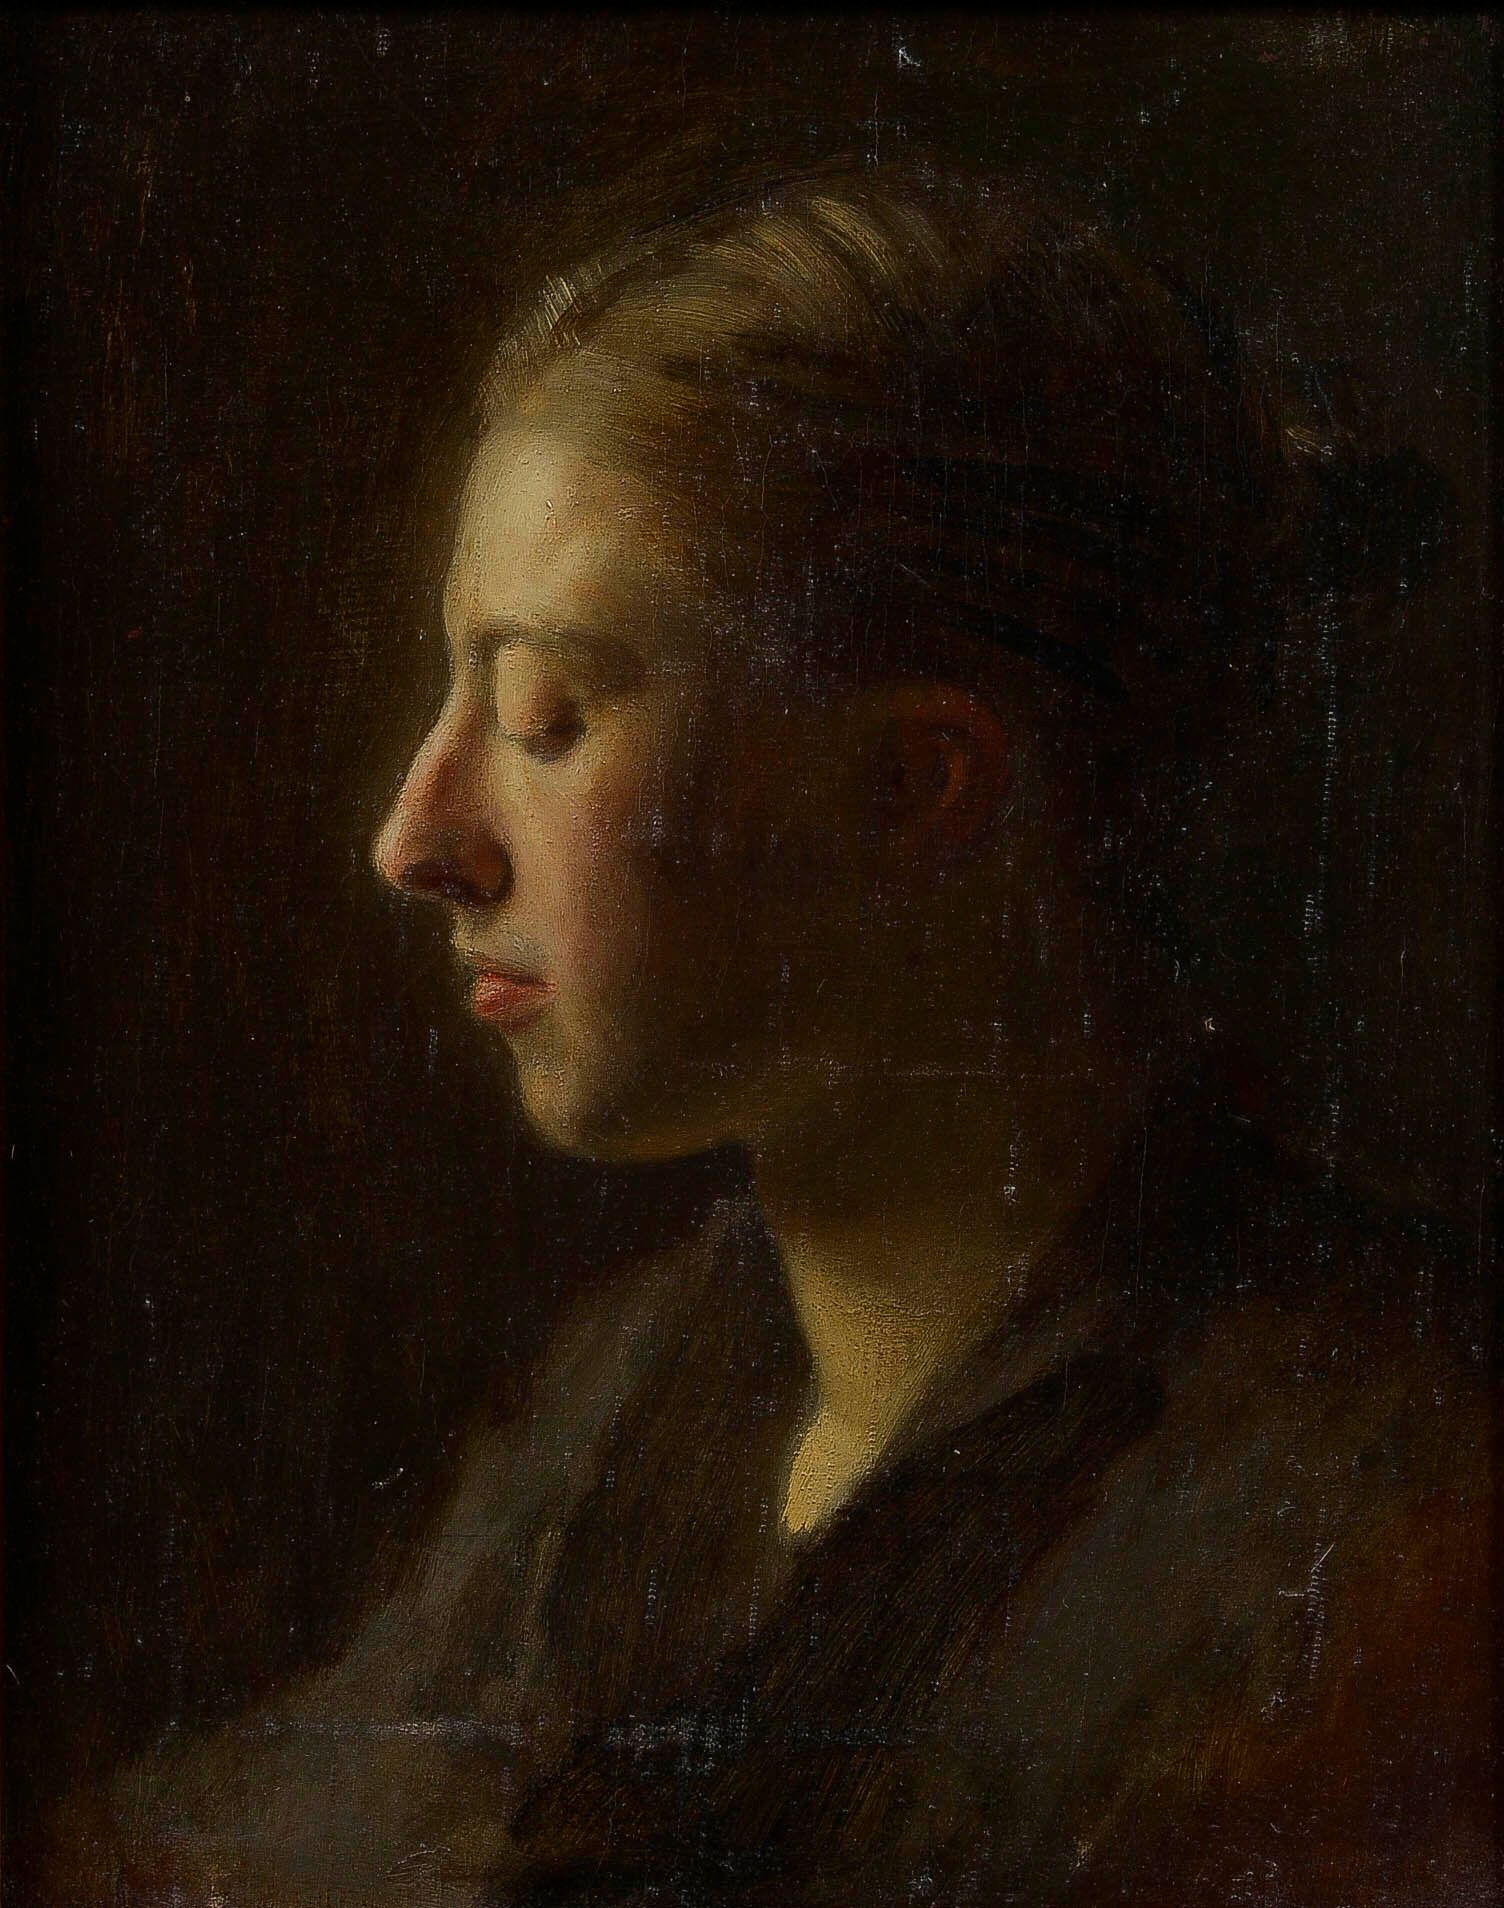 Null 约瑟夫-布吕尼埃 (1860-1929)

年轻女孩闭着眼睛的轮廓

布面油画，由画家的女儿提供证明

35 x 28 cm